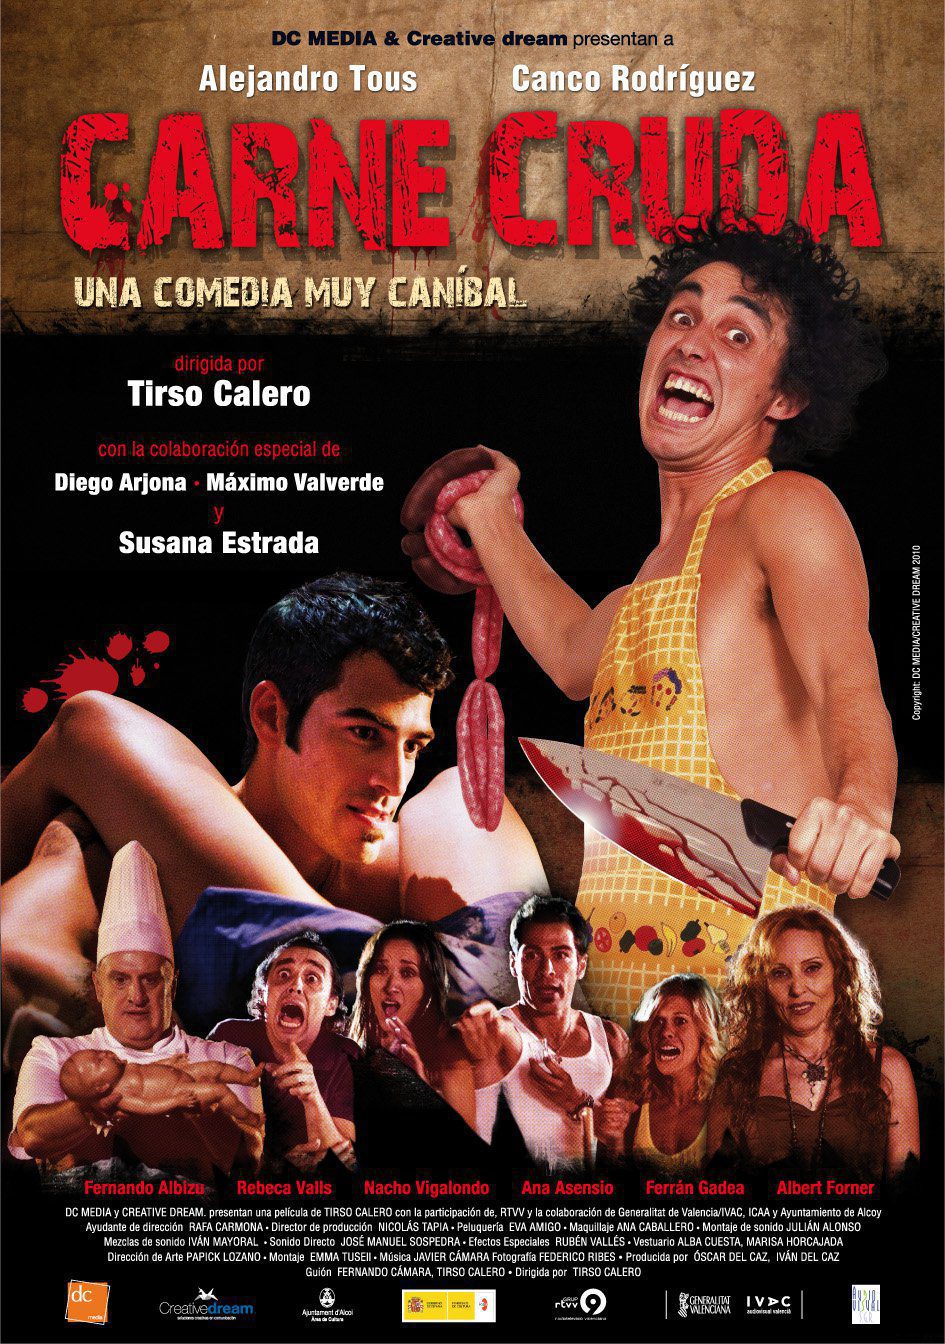 Poster of Carne cruda - España